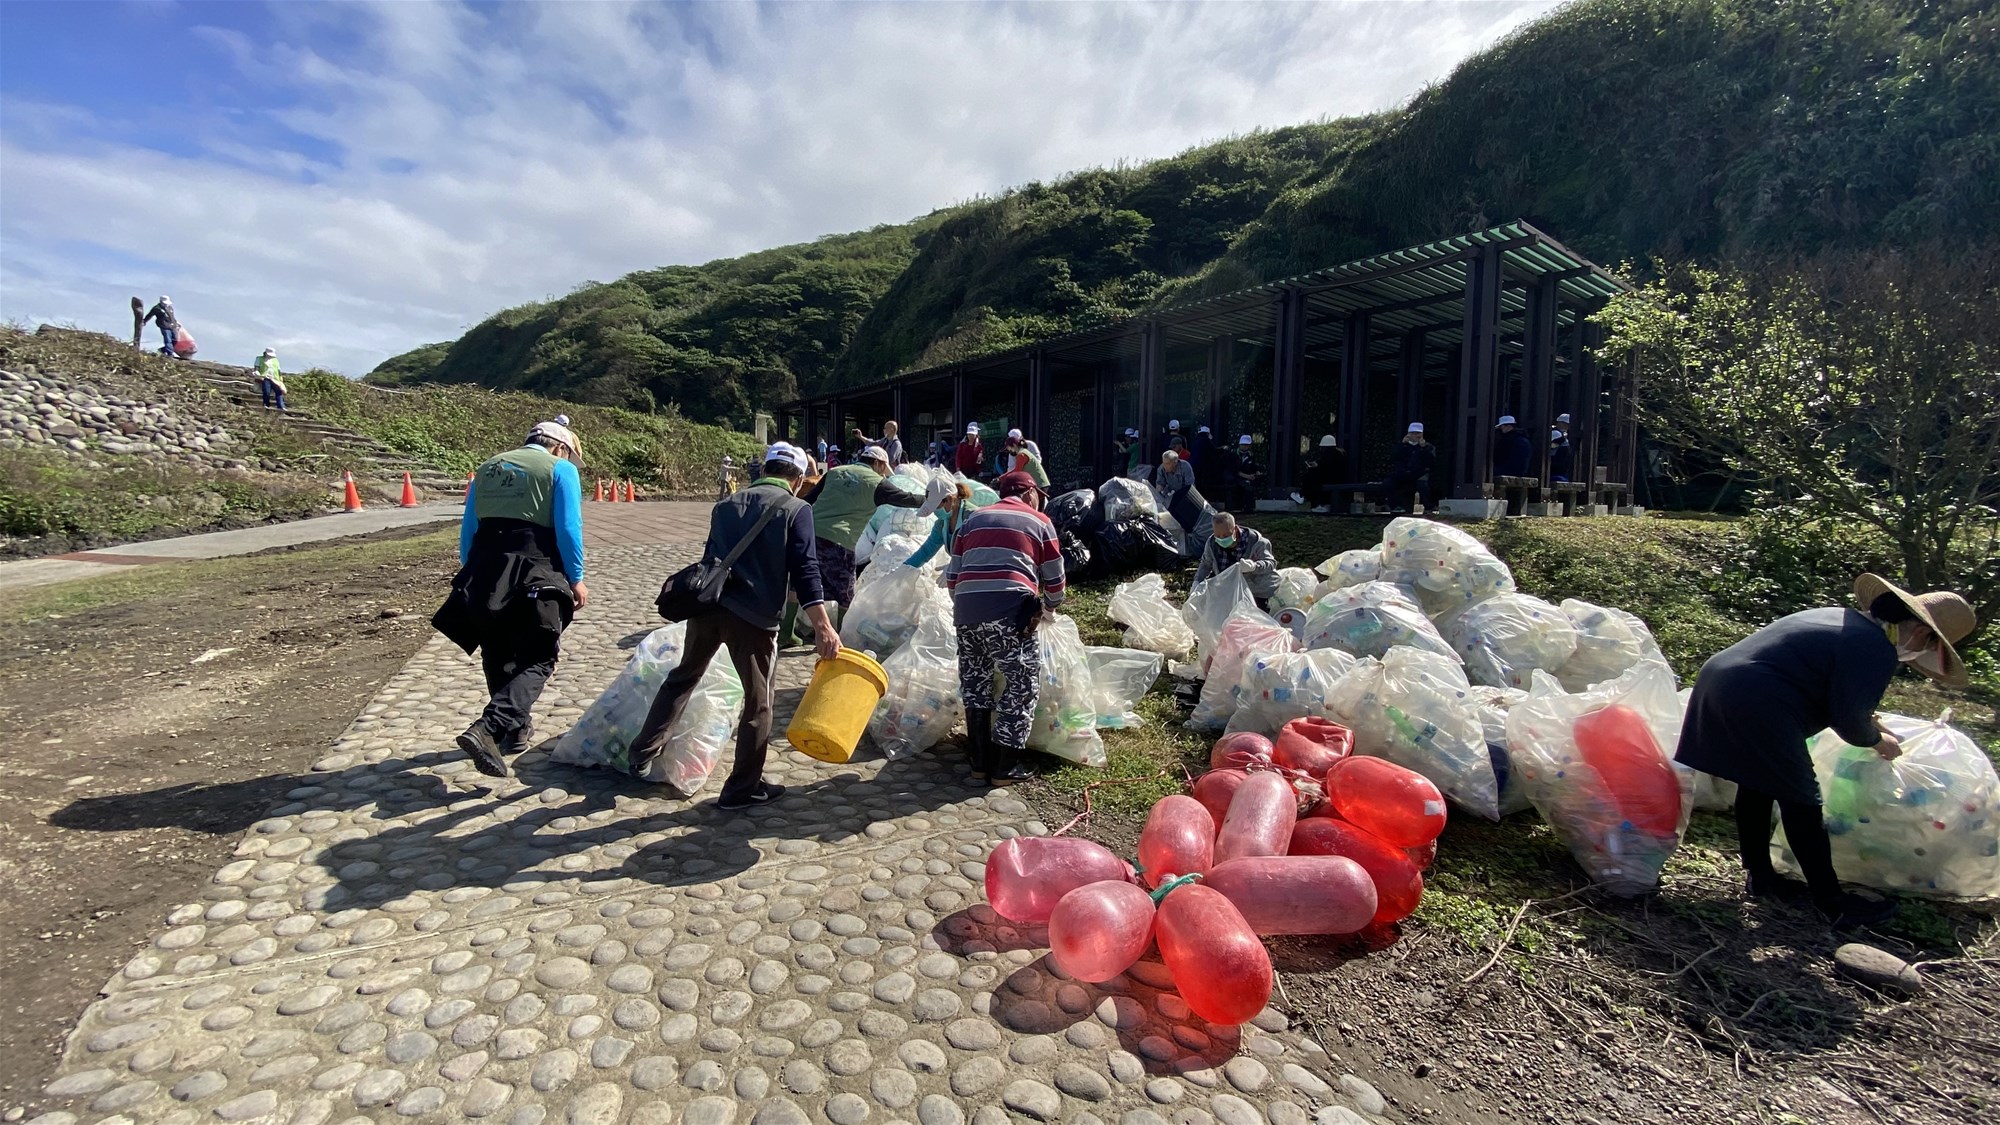 การอนุรักษ์ระบบนิเวศอย่างยั่งยืน 2023 กิจกรรมทำความสะอาดชายหาดเกาะ Guishan ~ การท่องเที่ยวเชิงอนุรักษ์เกาะ Guishan เปิดเกาะในวันที่ 1 มีนาคม